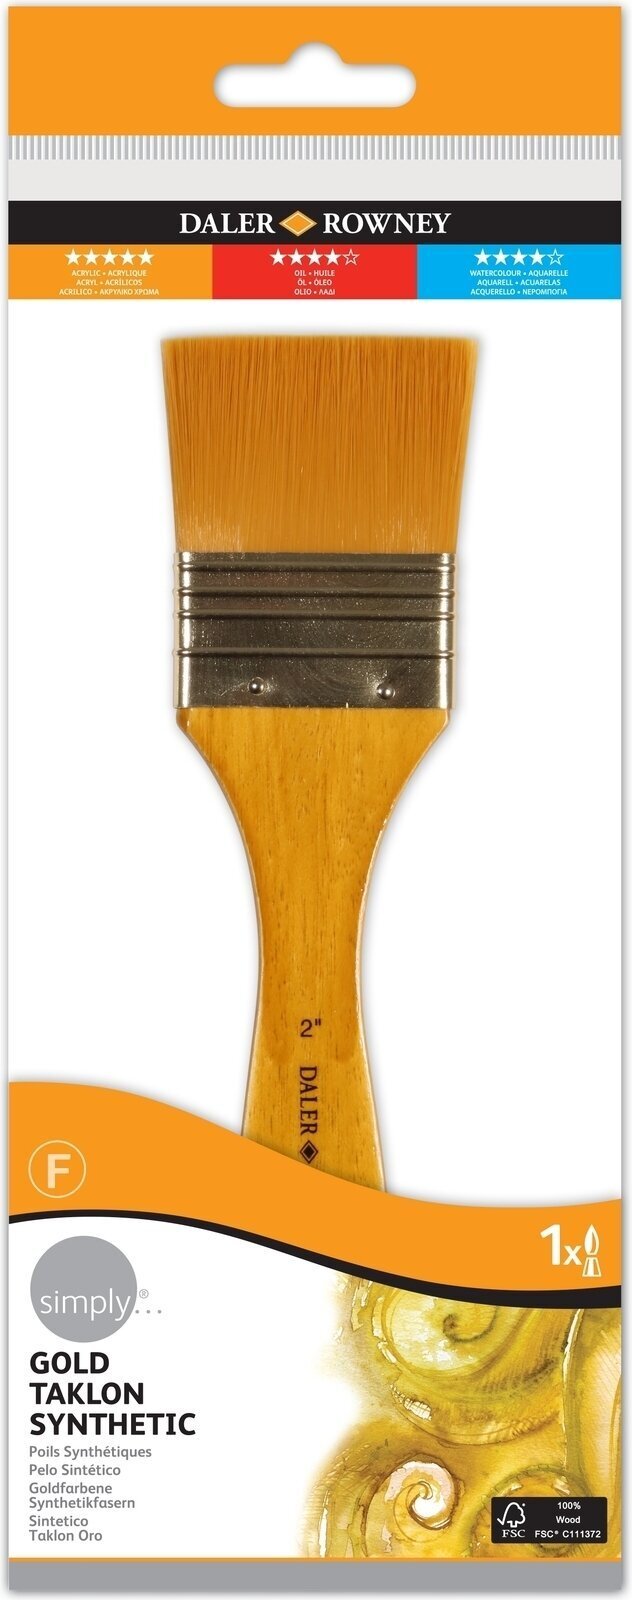 Cepillo de pintura Daler Rowney Simply Acrylic Brush Gold Taklon Synthetic Pincel plano 2 1 pc